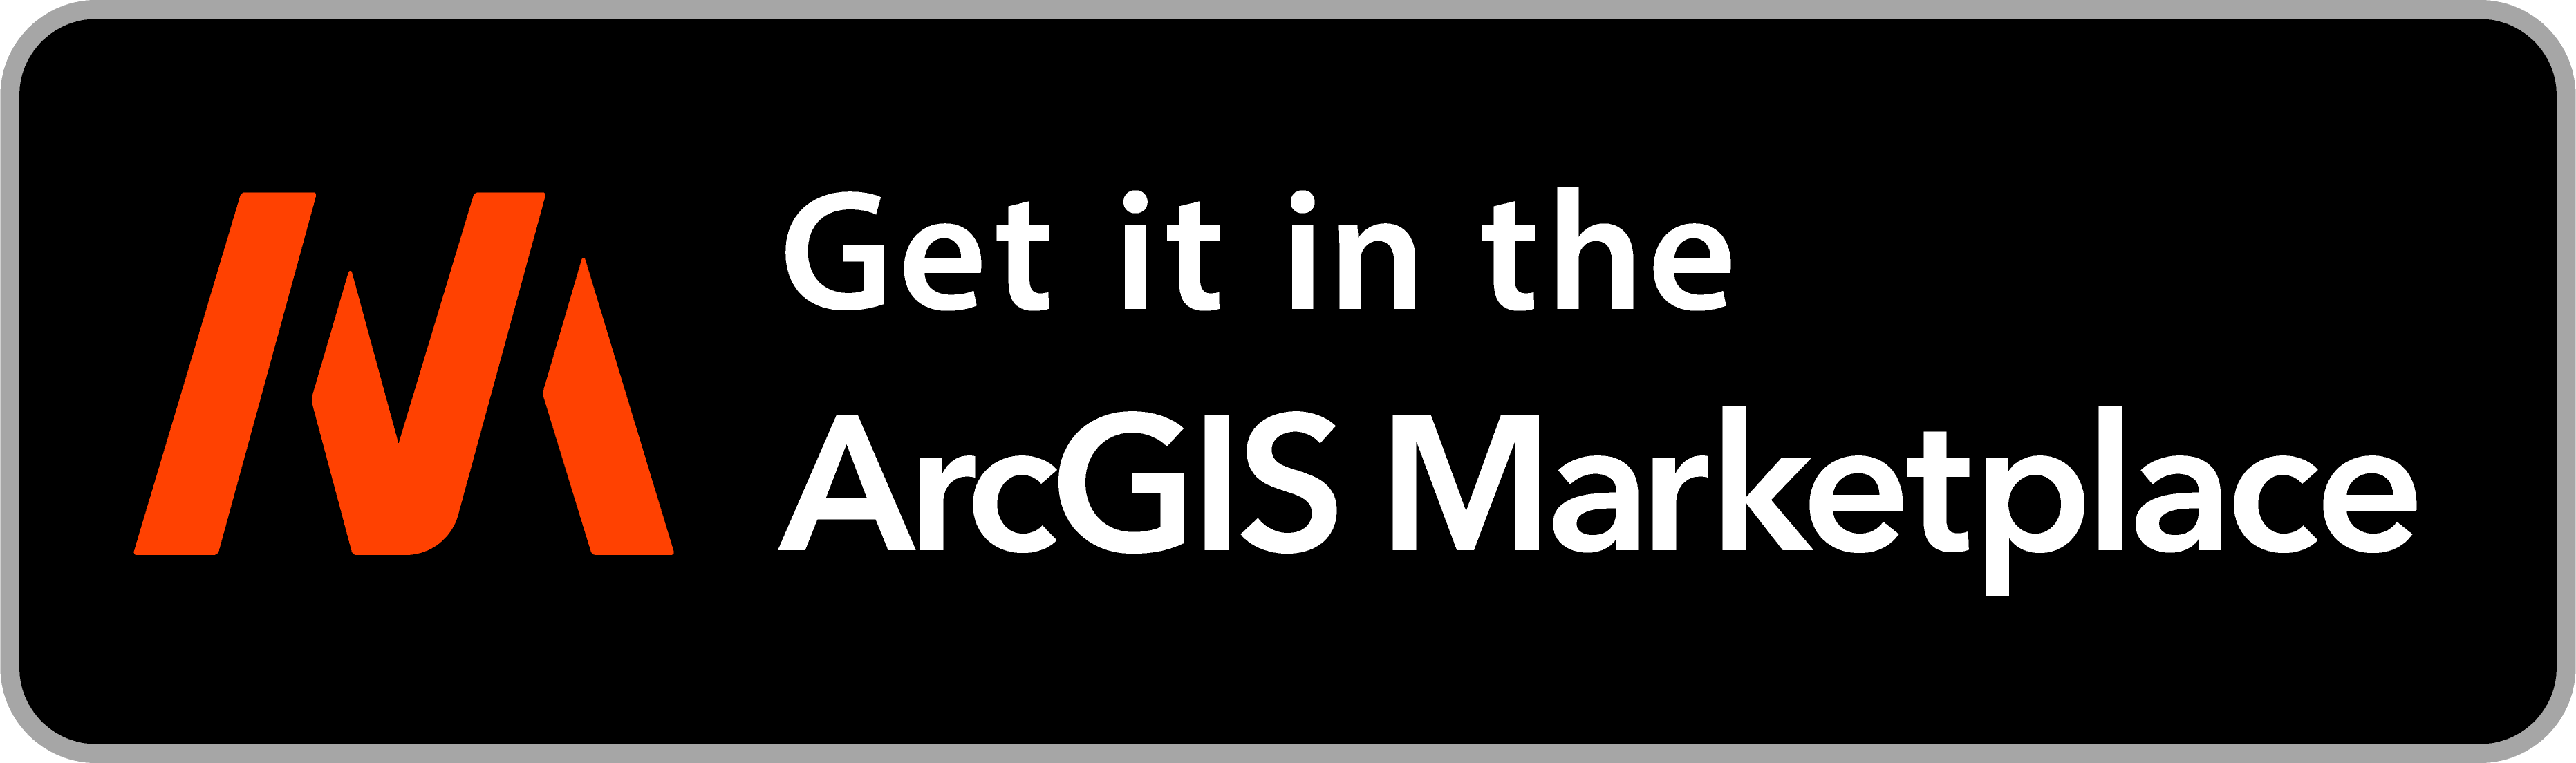 ArcGIS Marketplace logo